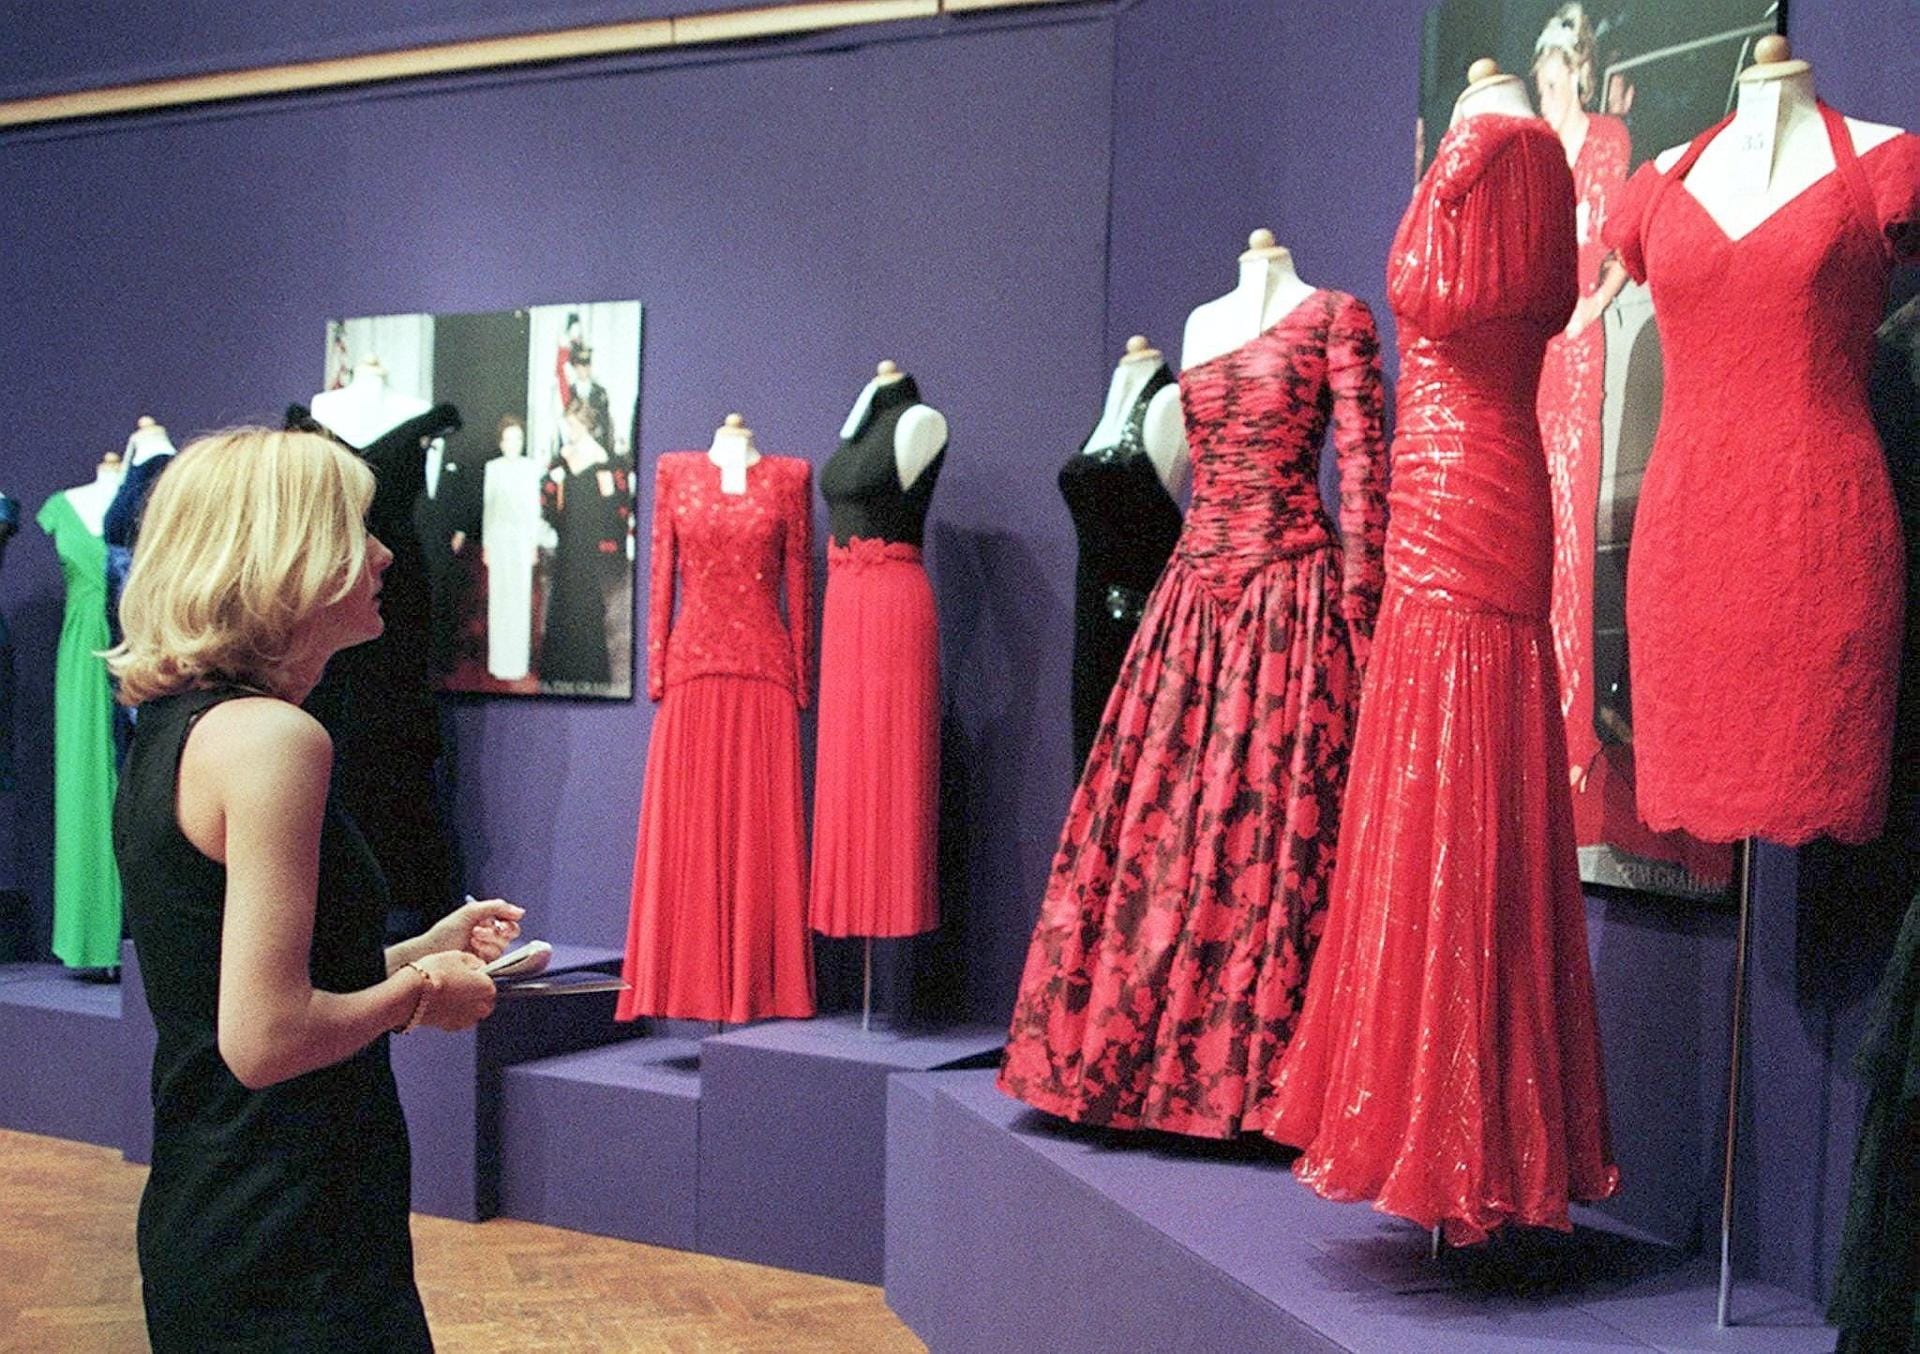 Selbst Prinzessin Diana nutzte das Auktionshaus, um einige ihrer Kleider für wohltätige Zwecke an solvente Käufer zu bringen. Kurz vor ihrem Tod kamen Ende Juni 1997 in New York 79 Kleider von Lady Di unter den Hammer.